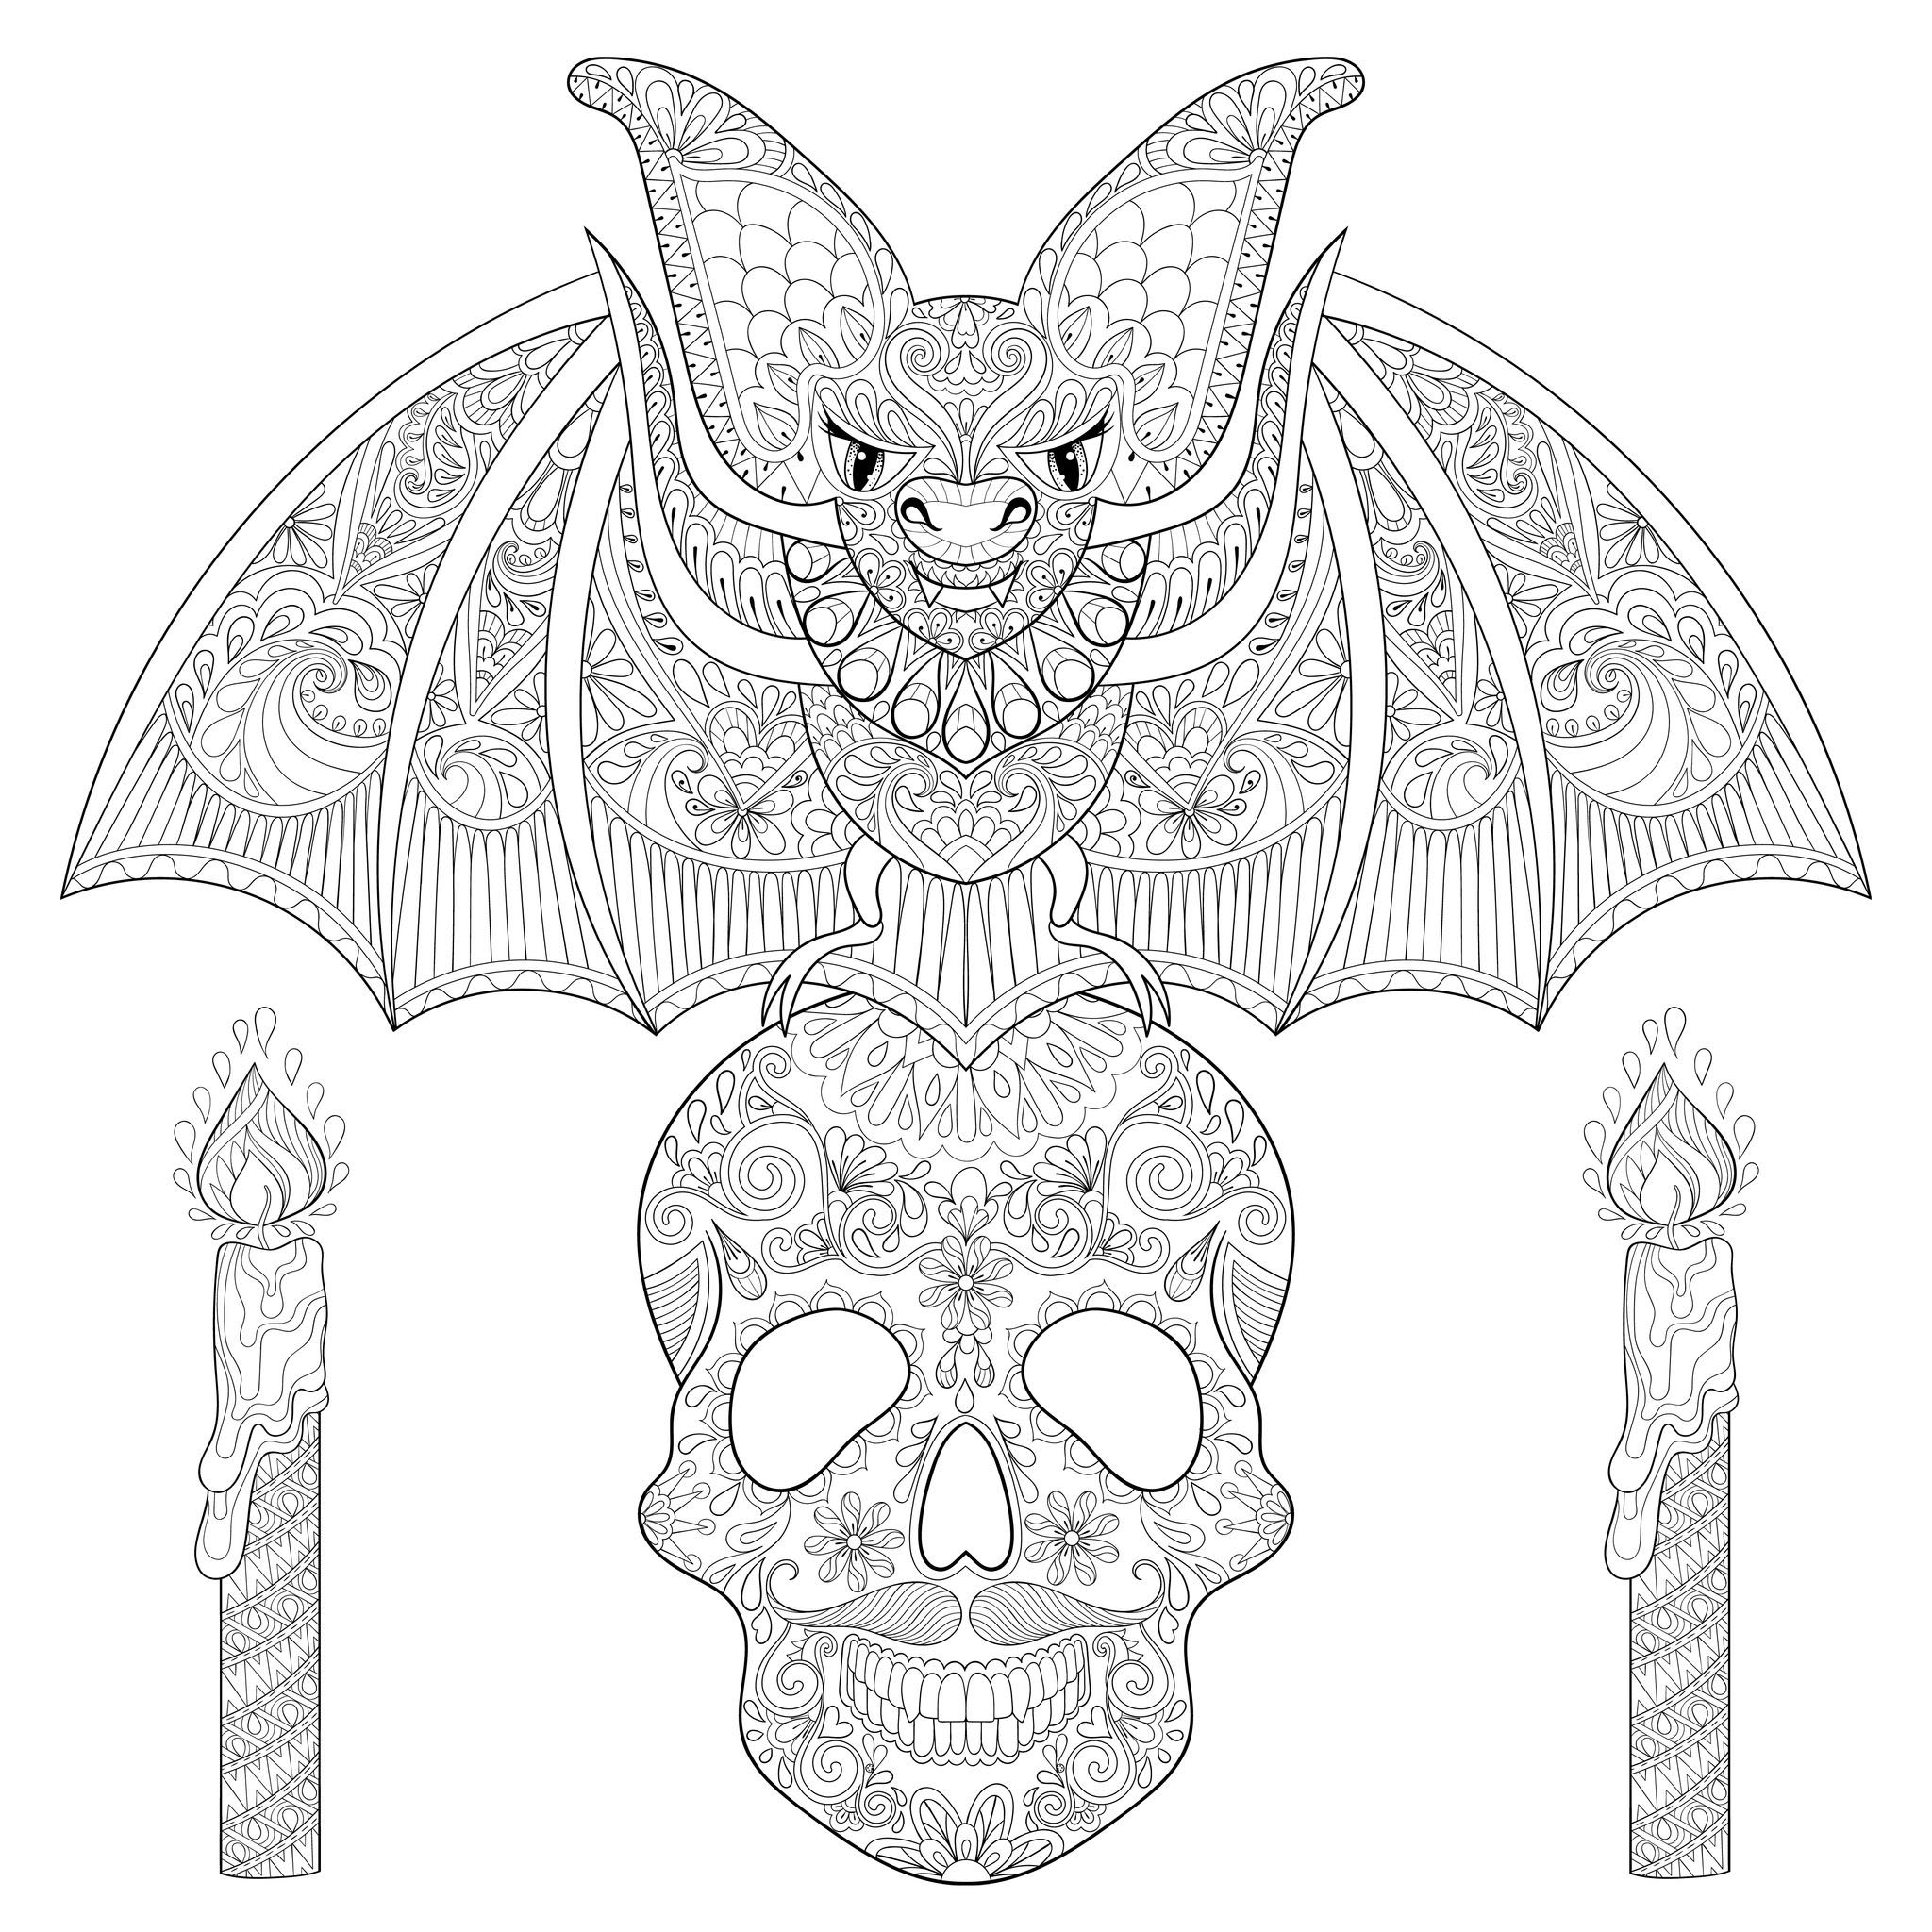 Belle chauve-souris sur un crâne de squelette, avec des bougies. Chaque élément est plein de motifs maléfiques.